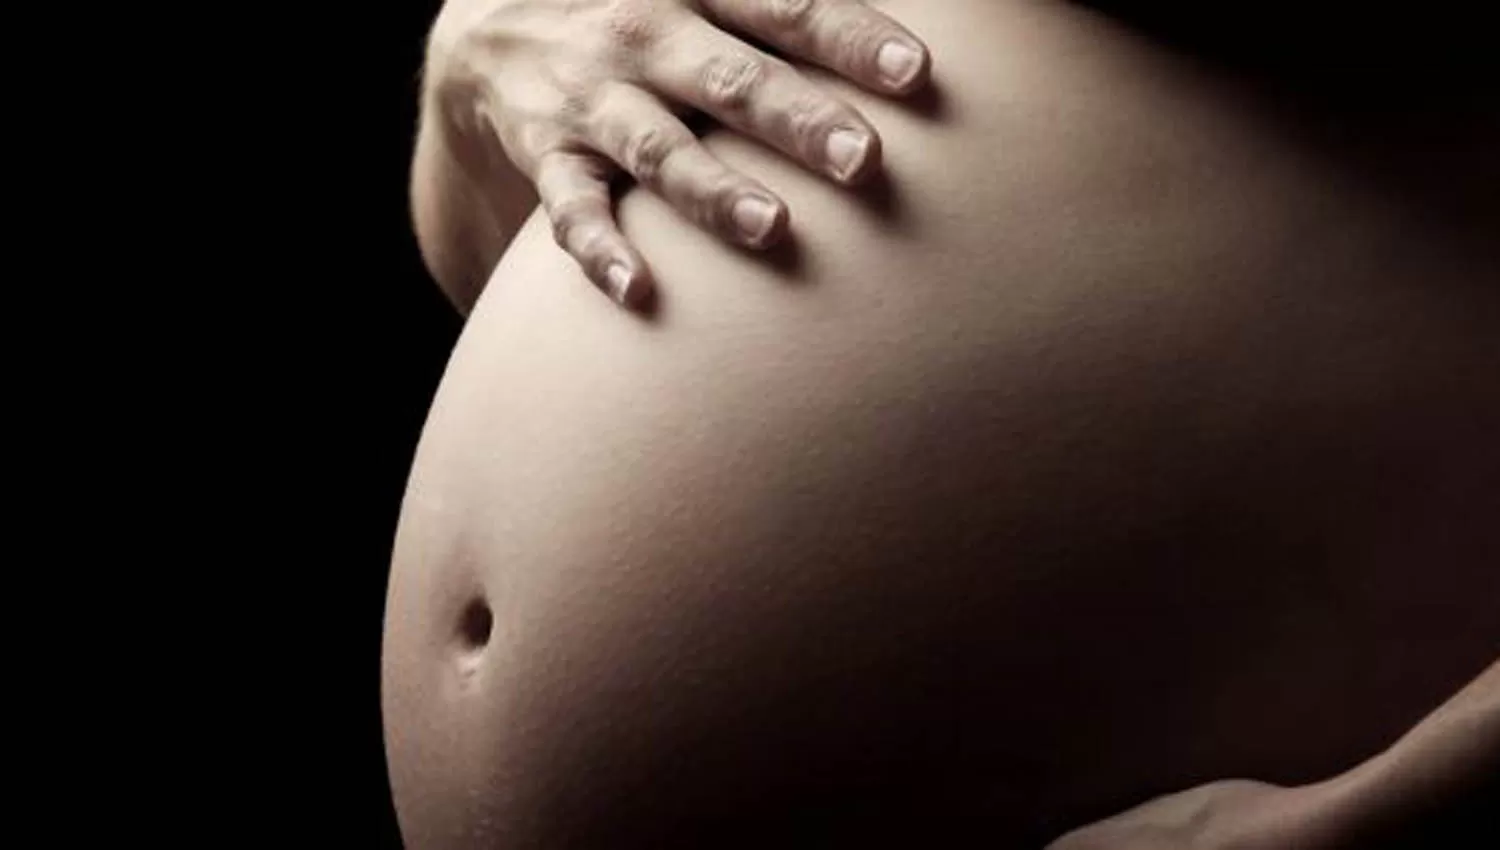 Autorizaron el primer alquiler de vientre en el país para una pareja de hombres